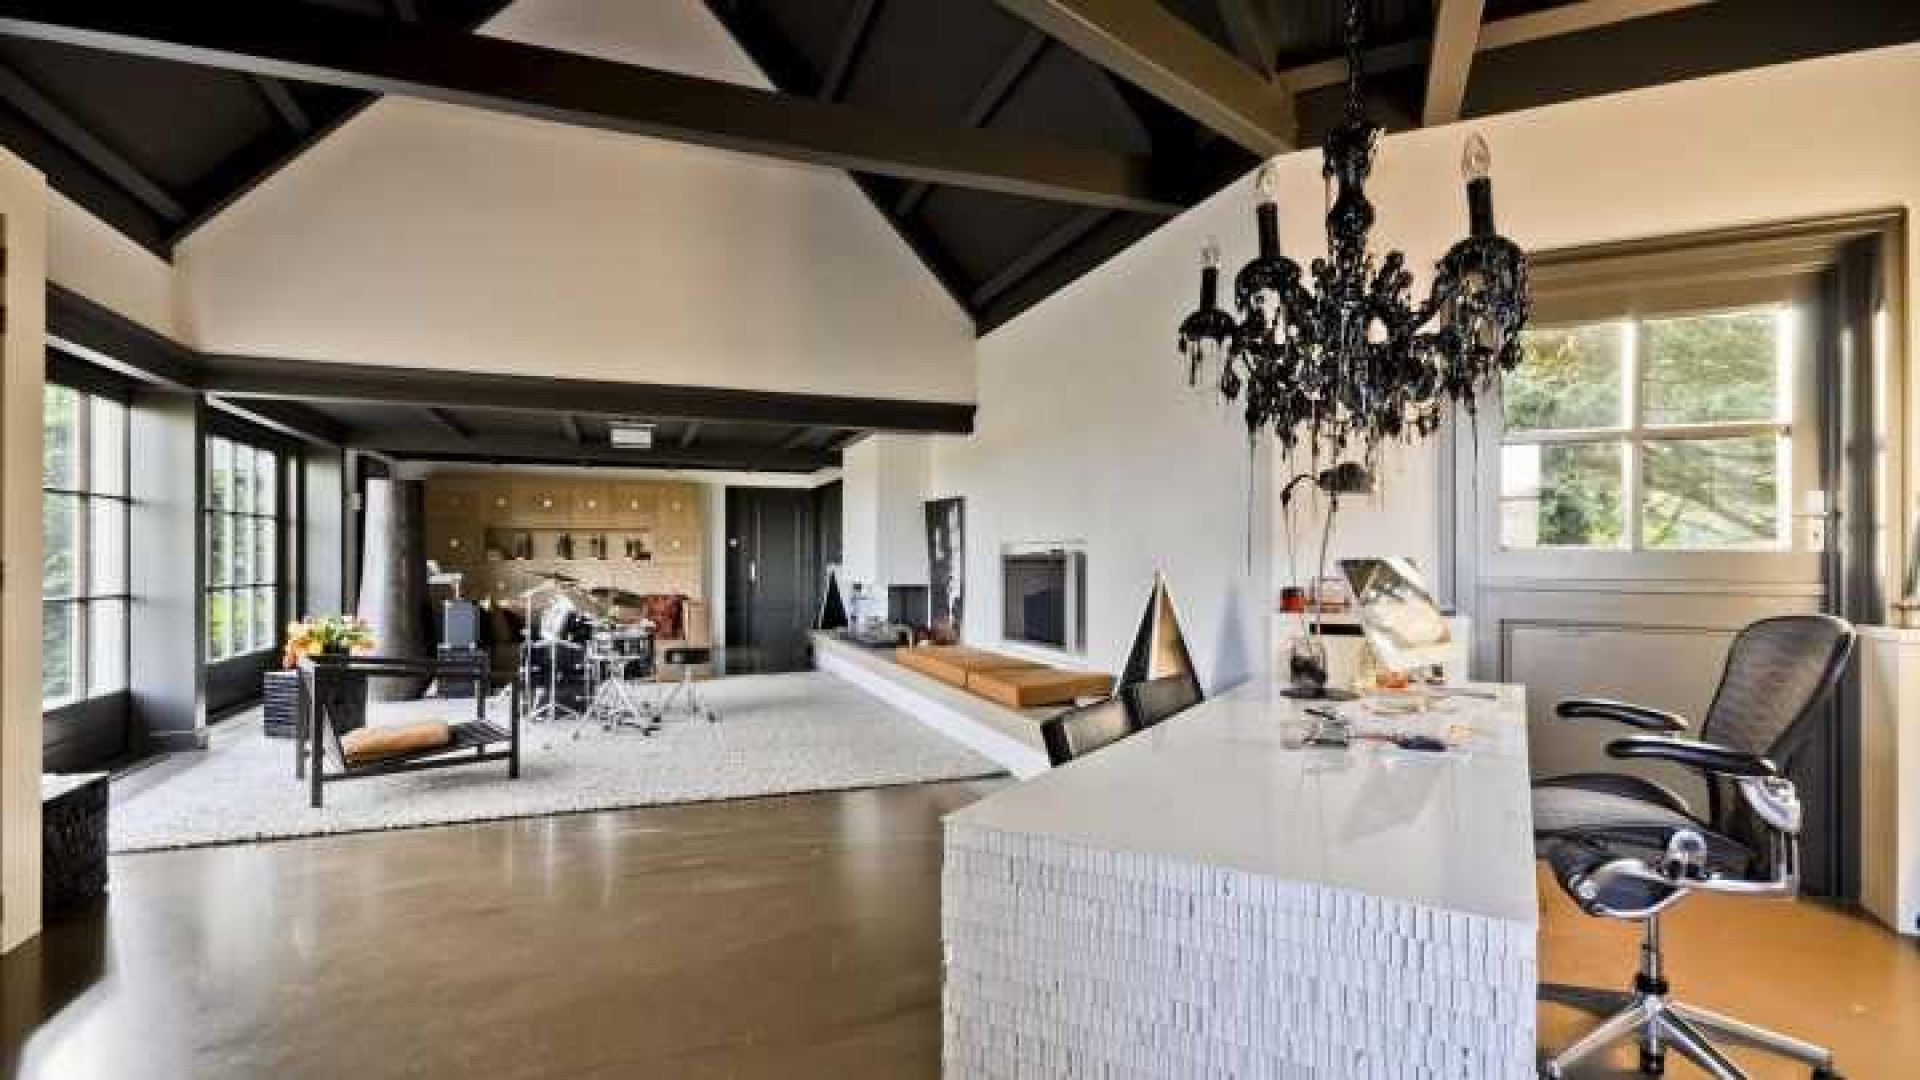 Henny Huisman verkoopt zijn villa zwaar onder de vraagprijs. Zie foto's 18